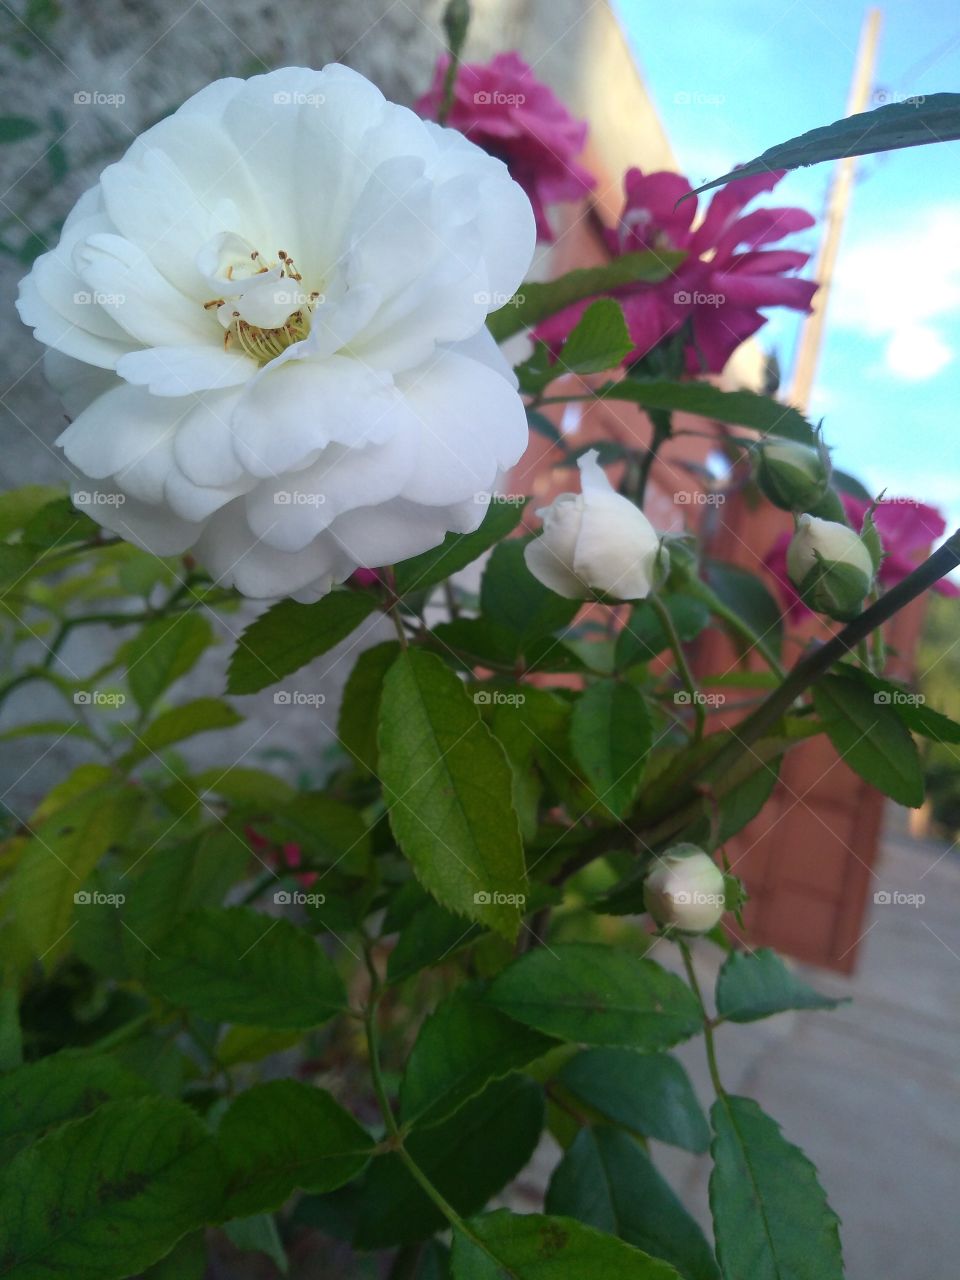 Rosa branca. Rosa Lilás. Cacho de rosas. Folhas. Jardim. Quintal. Mistura de cores. Tonalidades.